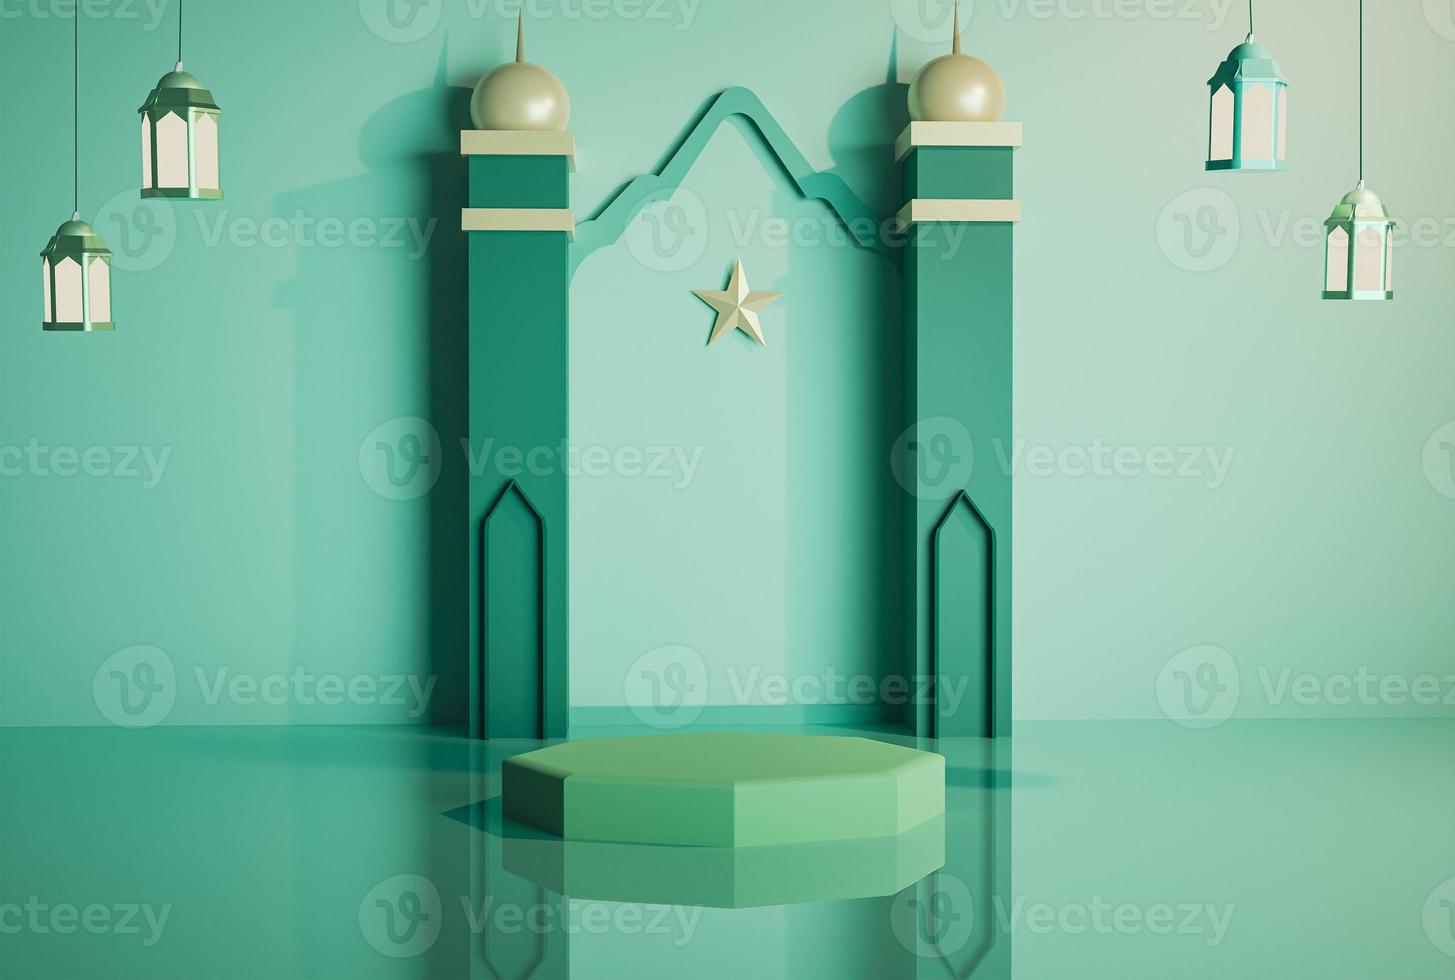 3d decoración islámica moderna exhibición de productos podio etapas de minarete verde con linterna colgante fondo suave y reflejo en el piso imagen de renderizado 3d foto